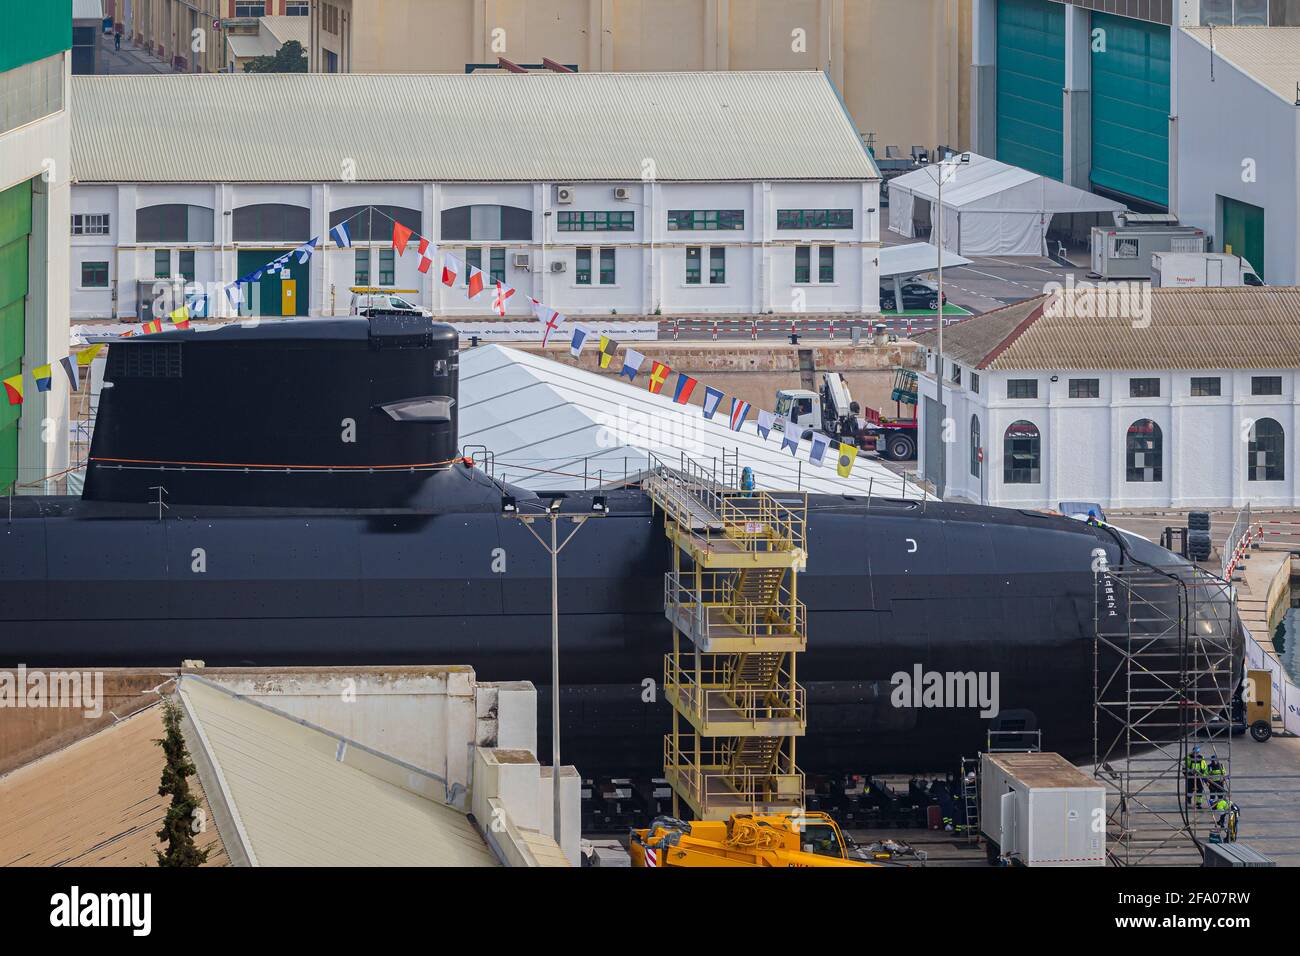 Cartagena, Espagne. 21 avril 2021. Préparation de la cérémonie de lancement du nouveau sous-marin série S80 de la Marine espagnole, appelé Isaac Peral. © ABEL F. ROS/Alamy Live News Banque D'Images